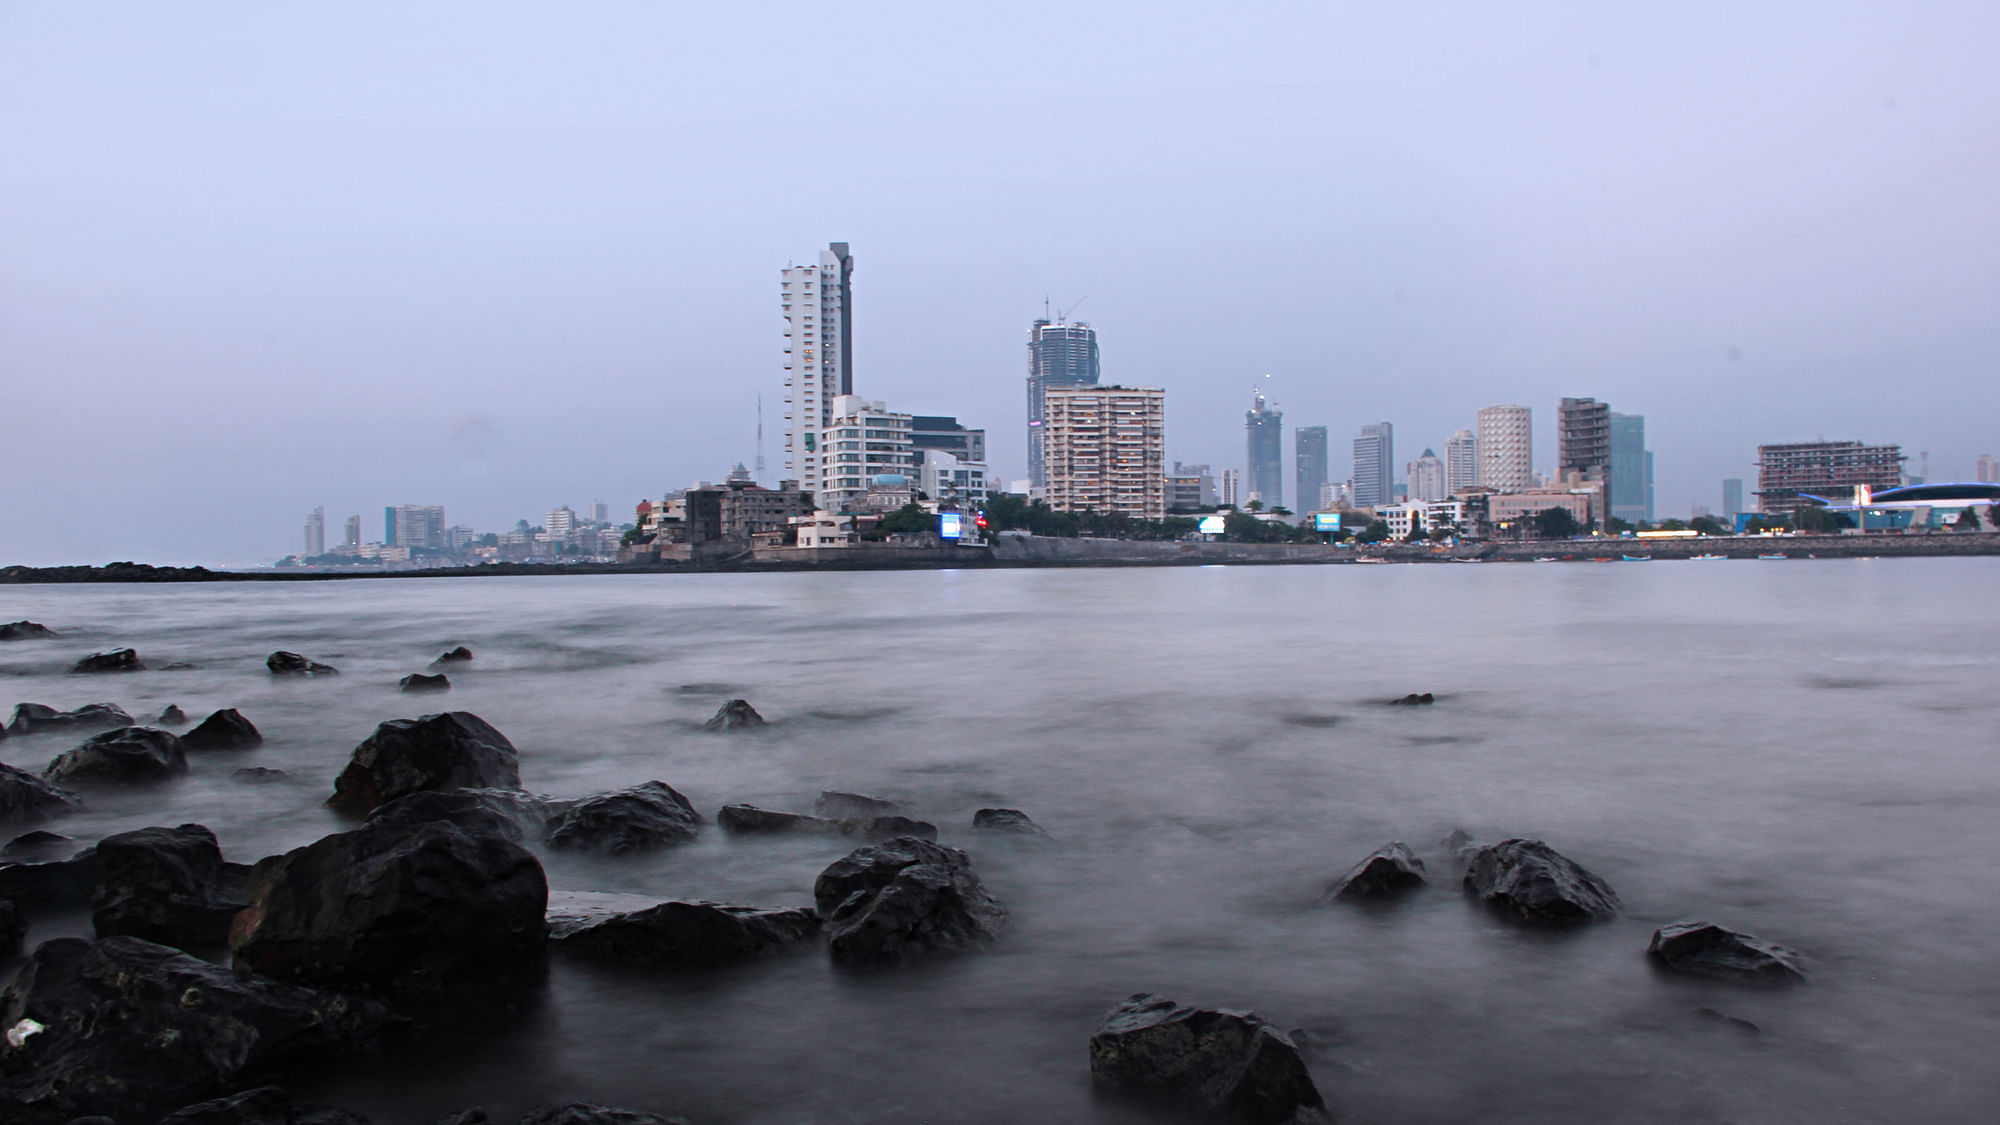  Mumbai Skyline as seen from Haji Ali Dargah. (Photo: Madhusudhan Sunder Raj)